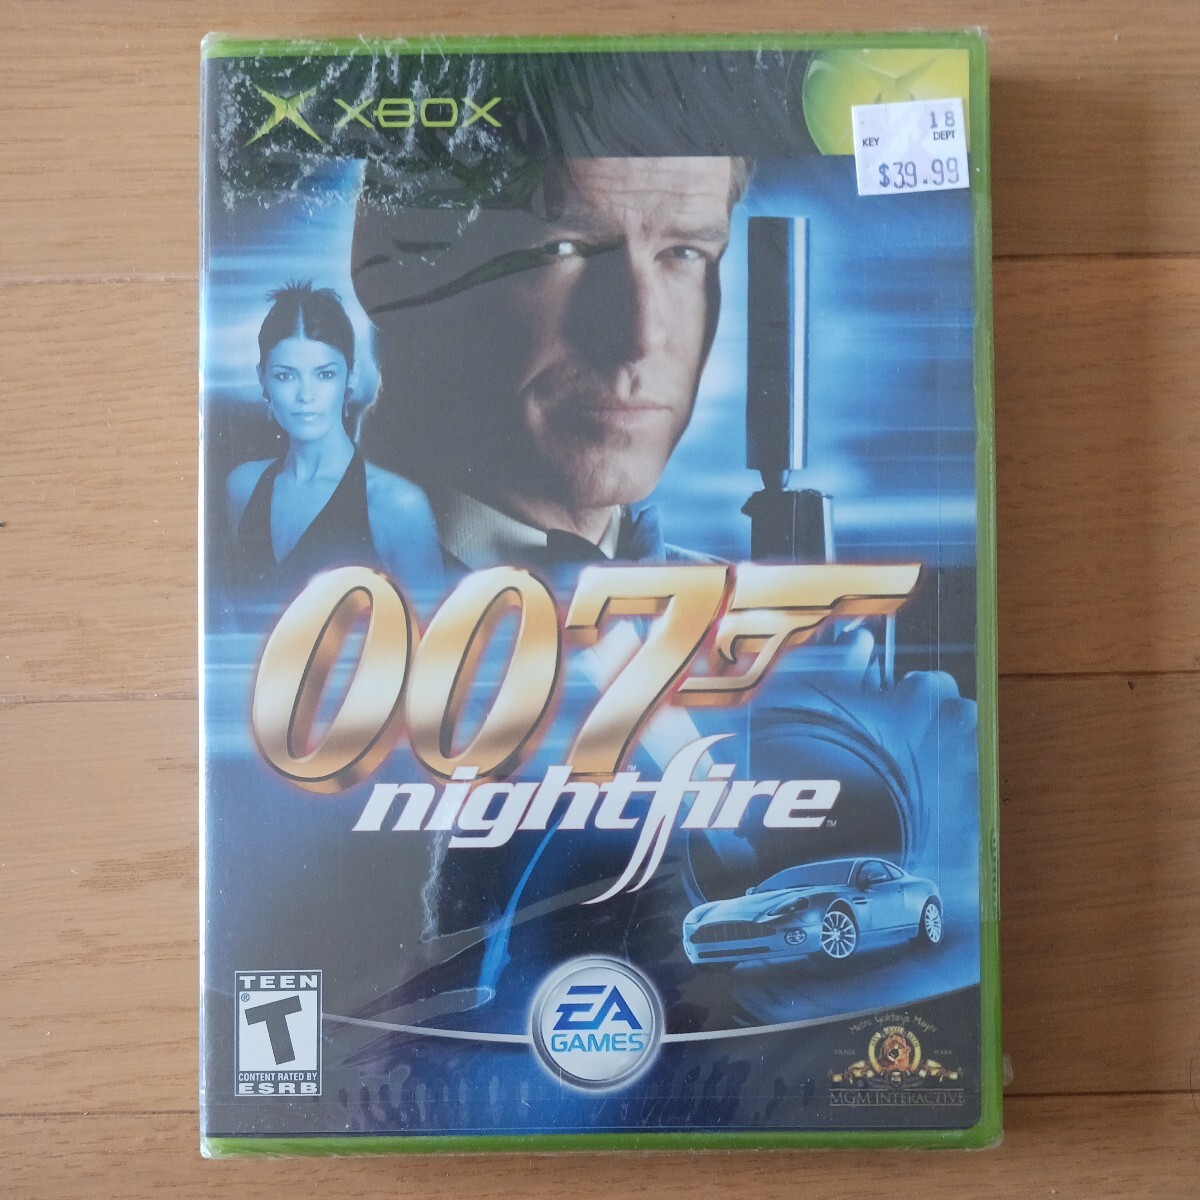 007 nightfire XBOX North America version 